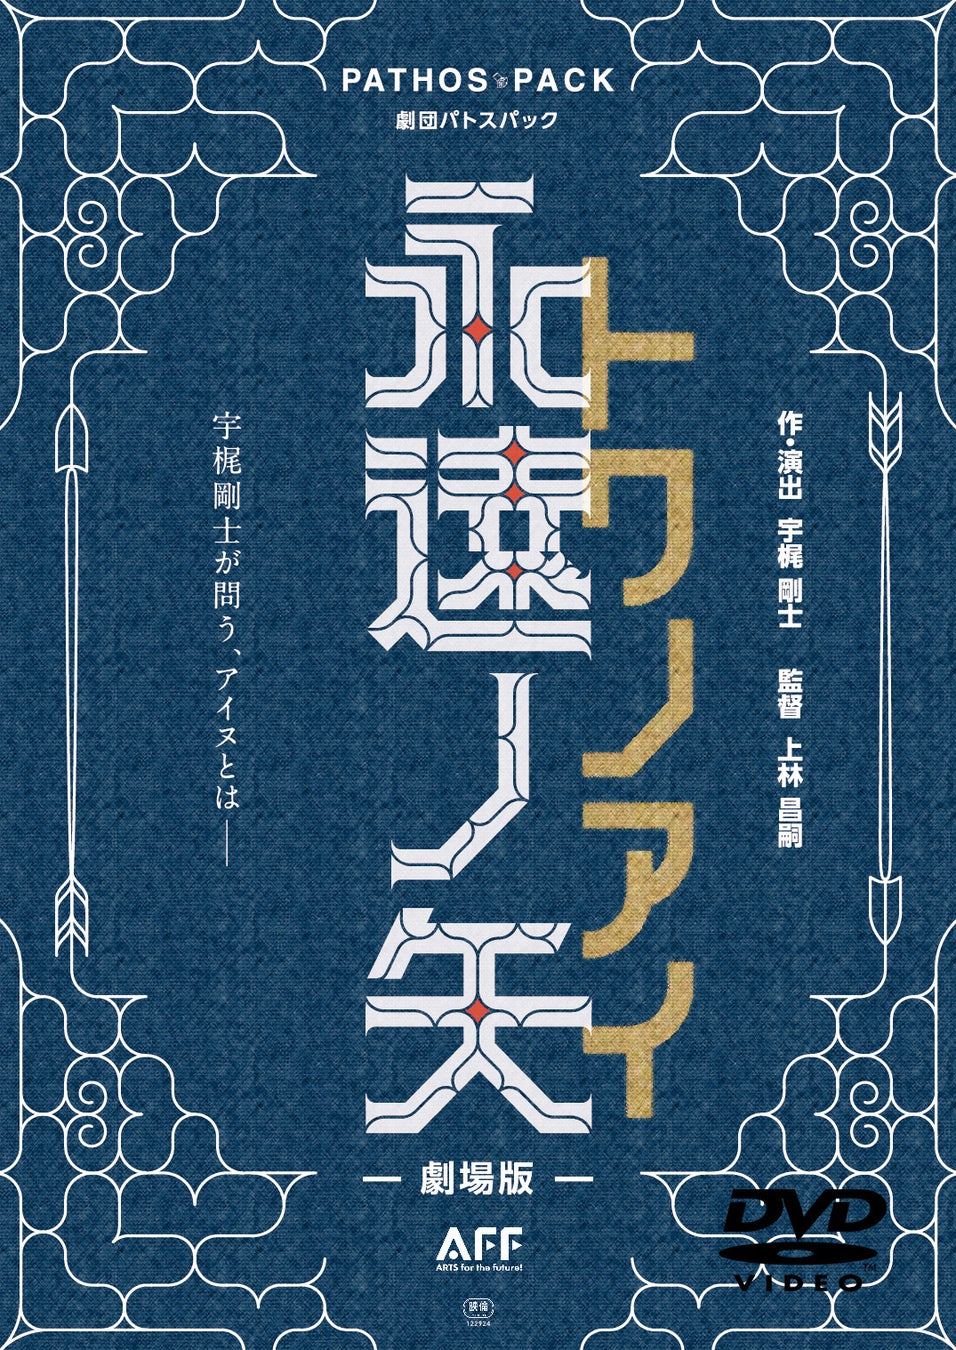 切なくも美しい純愛ロマンス！「メランコリア ～僕らの幸せの方程式～」DVD-BOX 4/28(⾦)より発売決定！